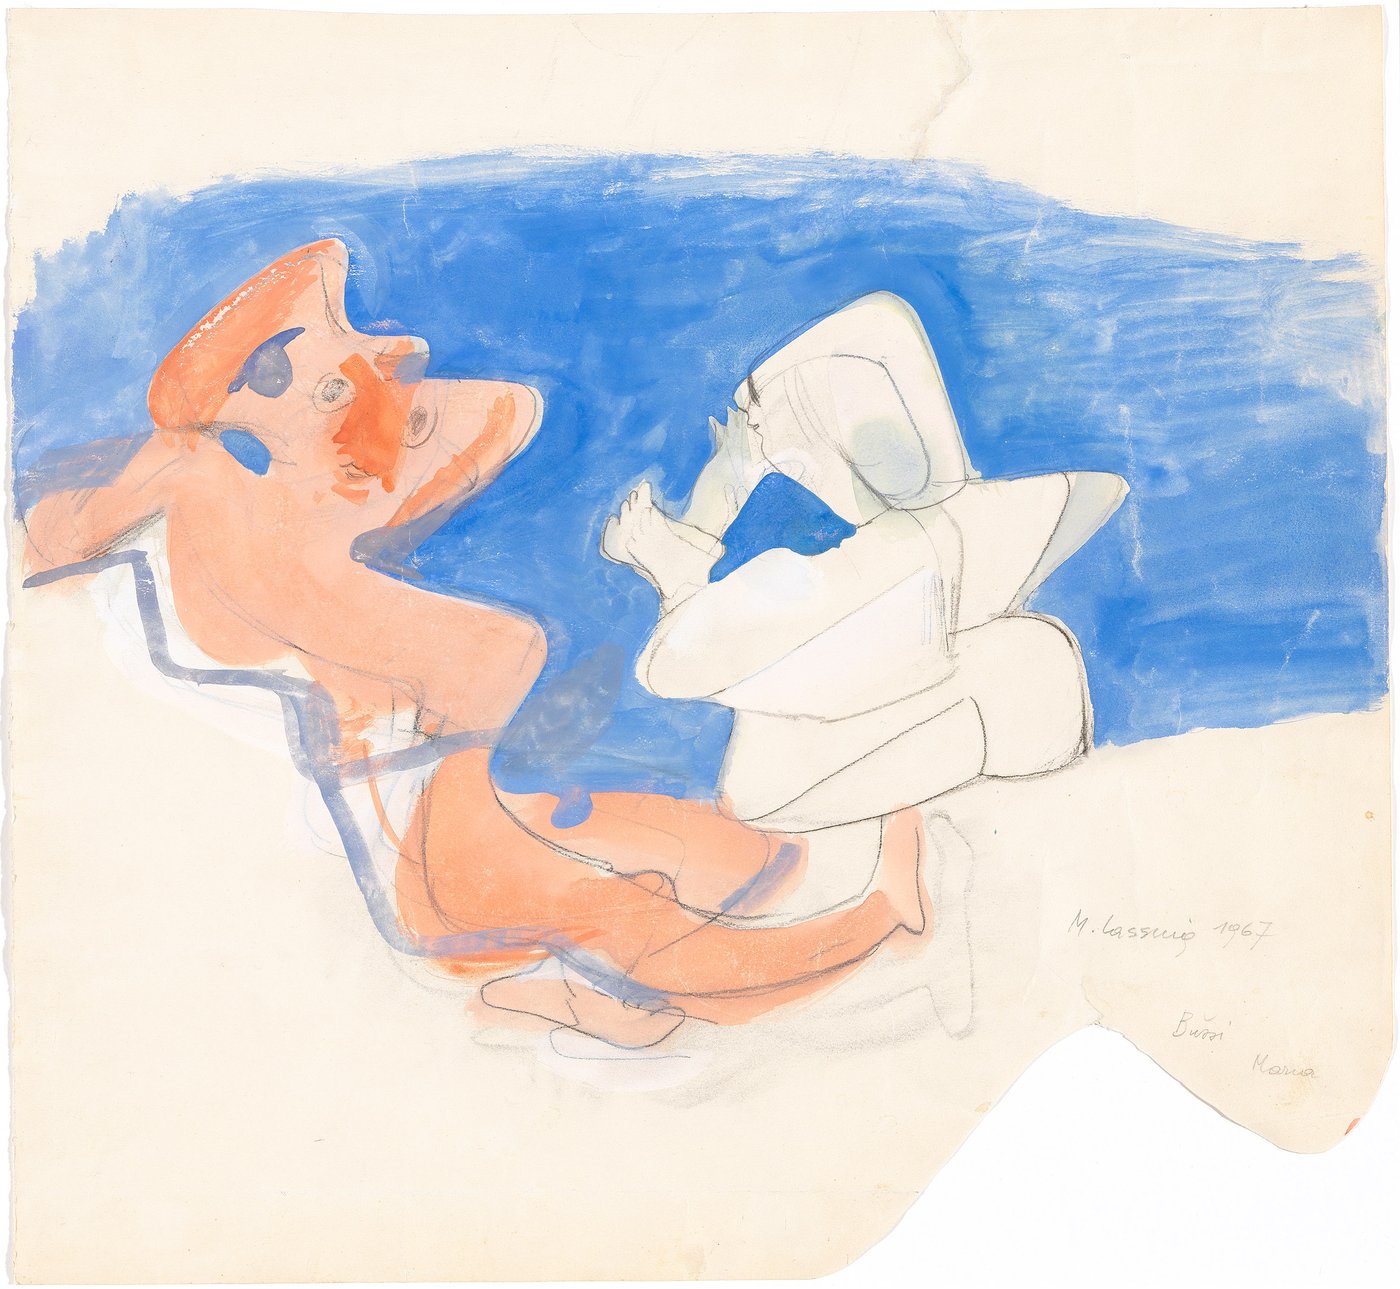 Vor blauem Hintergrund steht in der rechten Bildhälfte eine weiße Figur, die den Betrachtenden den Rücken zudreht. Links neben ihr ist eine orangefarbene, abstrahierte Figur dargestellt, die ihr Gesicht den Betrachtenden zuwendet.